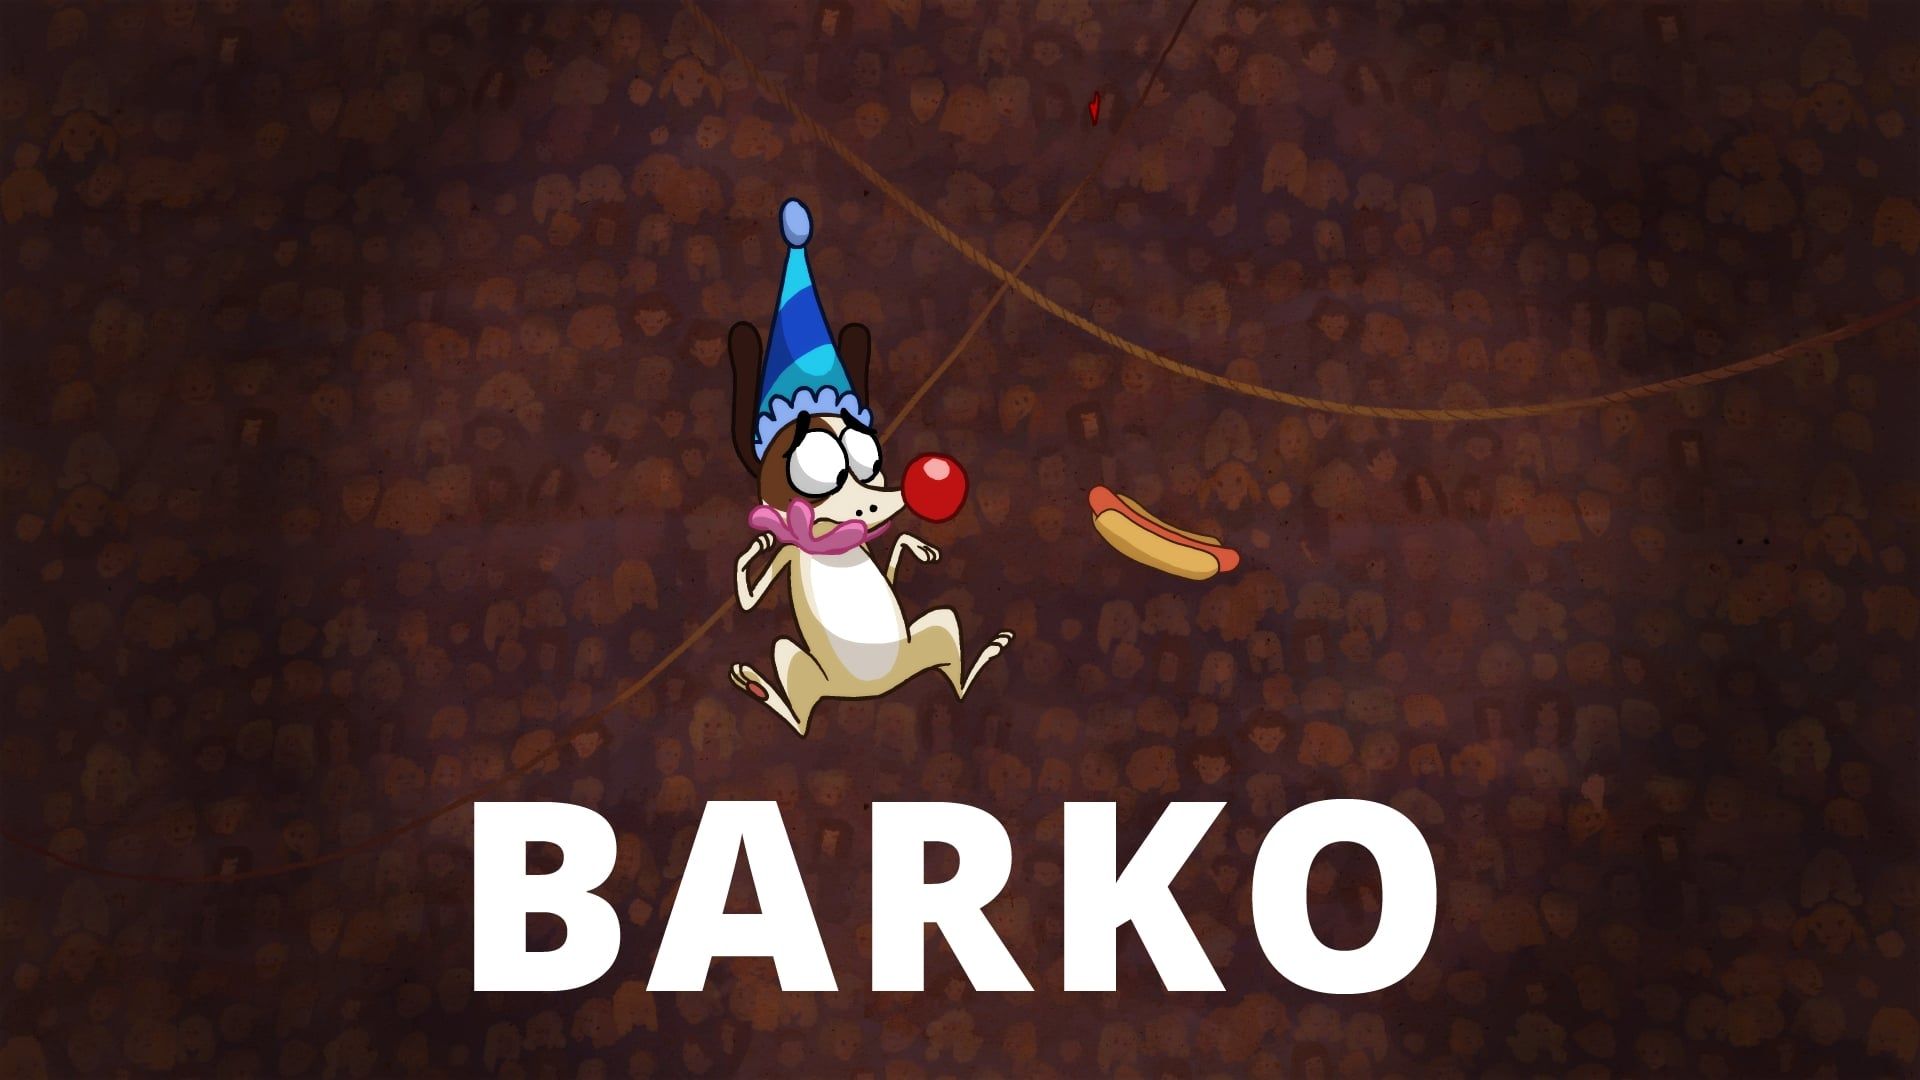 Barko background